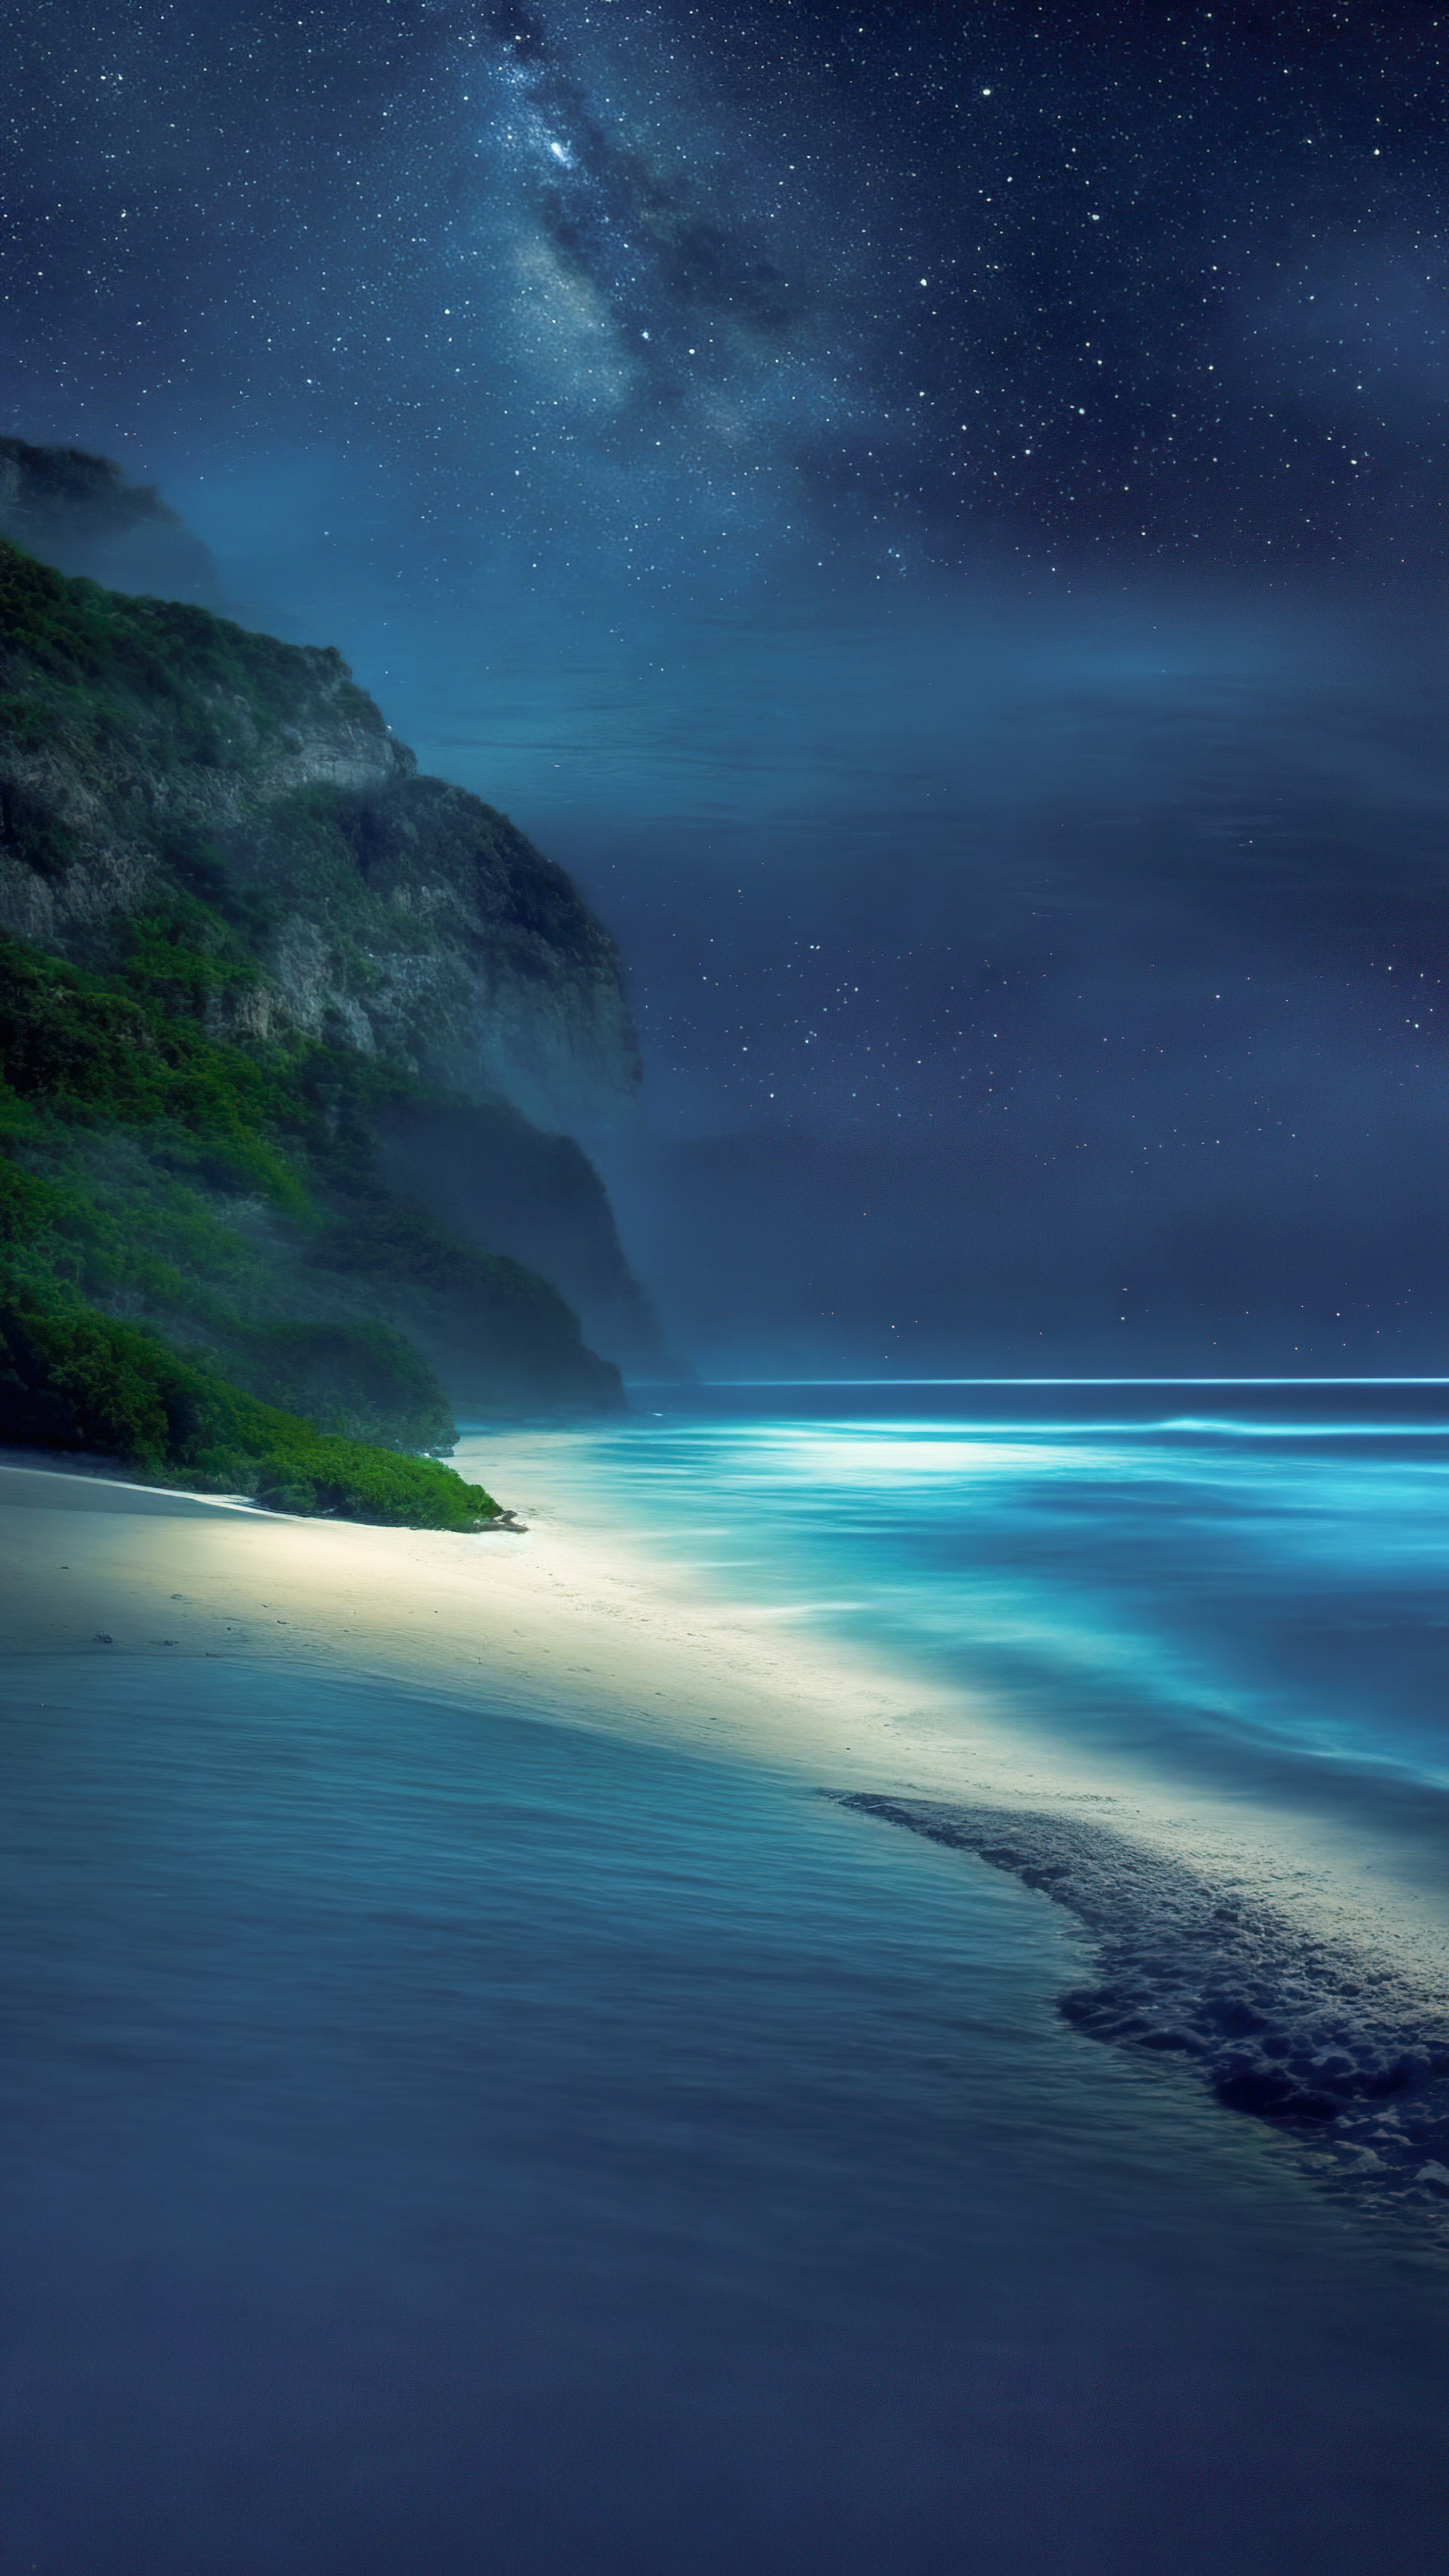 Transformez l'écran de votre appareil avec notre fond d'écran de paysage de plage, dépeignant une plage tranquille la nuit, avec les vagues qui caressent doucement le rivage et une canopée d'étoiles au-dessus.